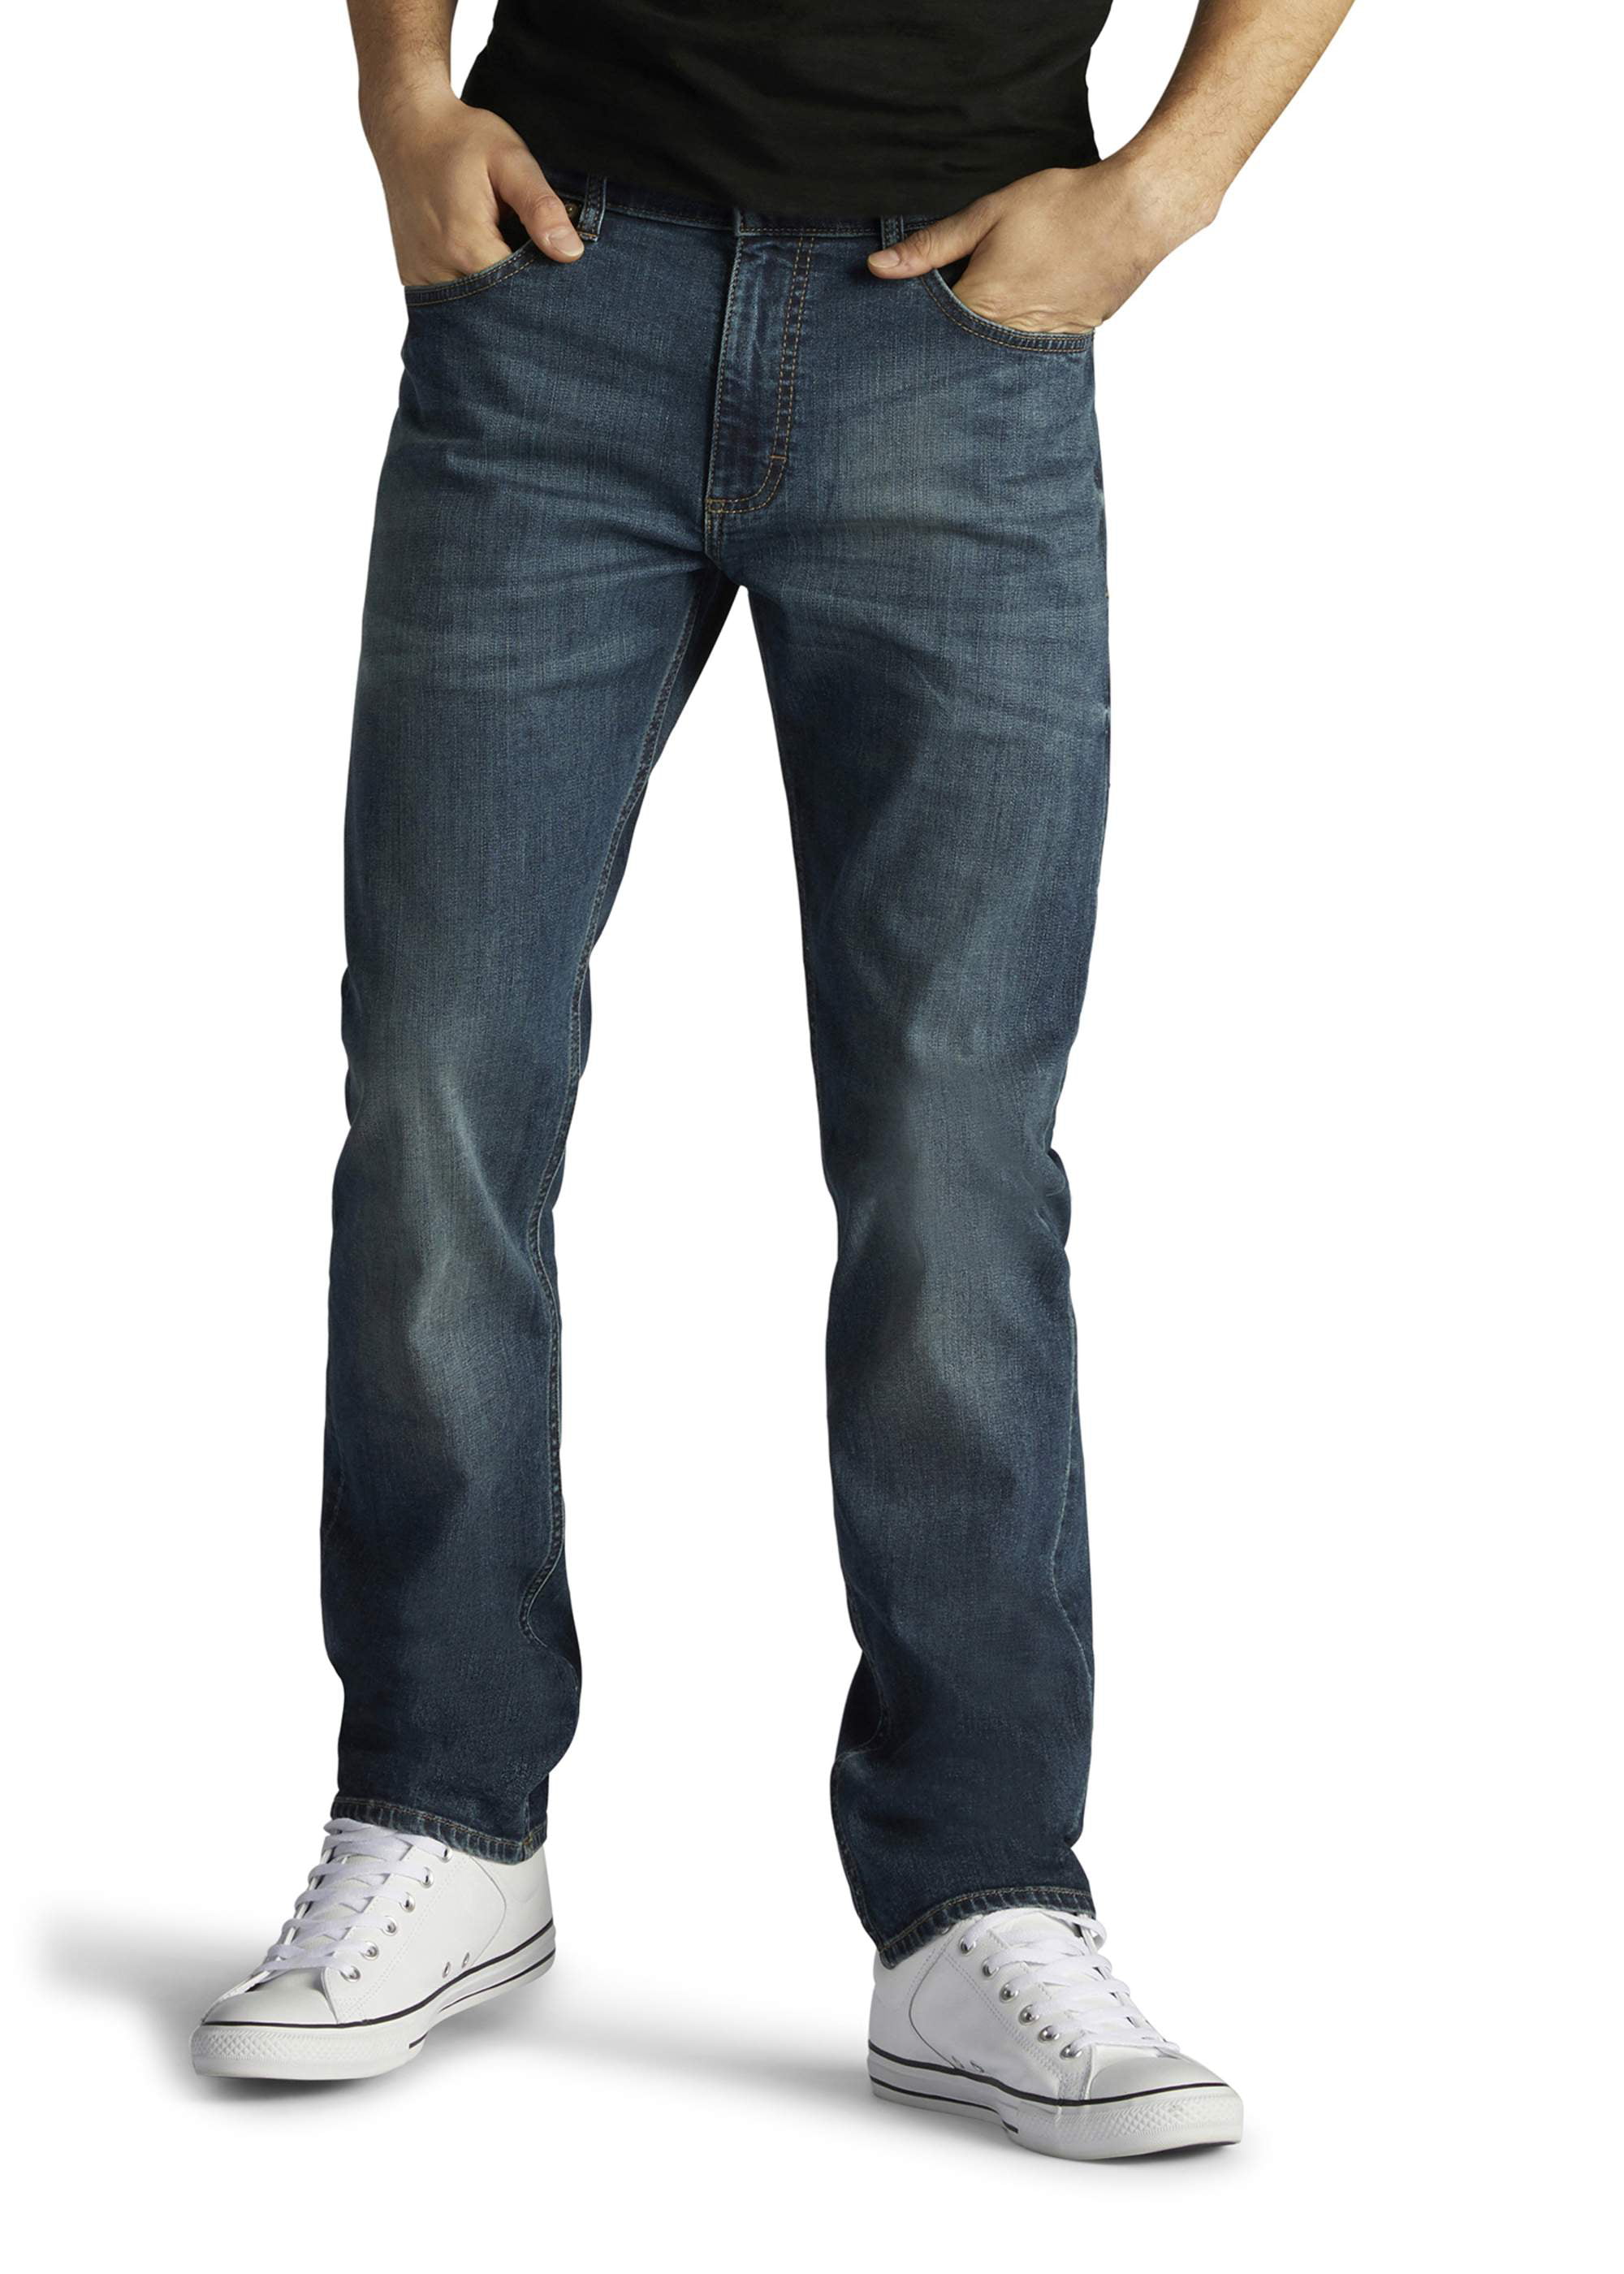 Lee Men's Modern Series Slim Fit Jeans Walmart.com